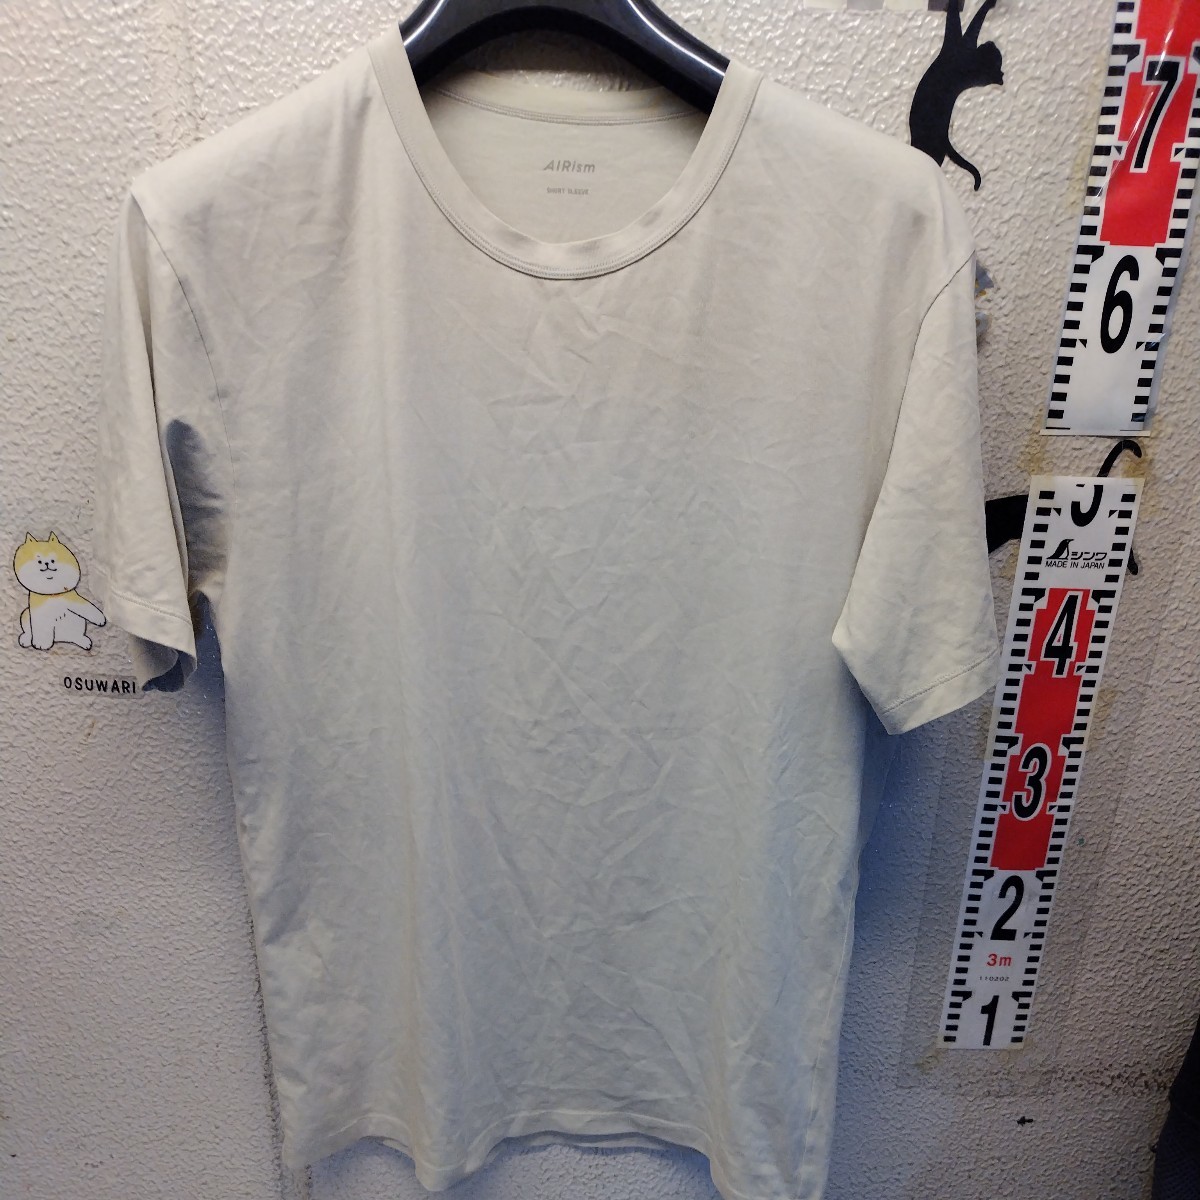  Uniqlo airism мужской L размер рубашка с коротким рукавом 2 шт. комплект 11|4